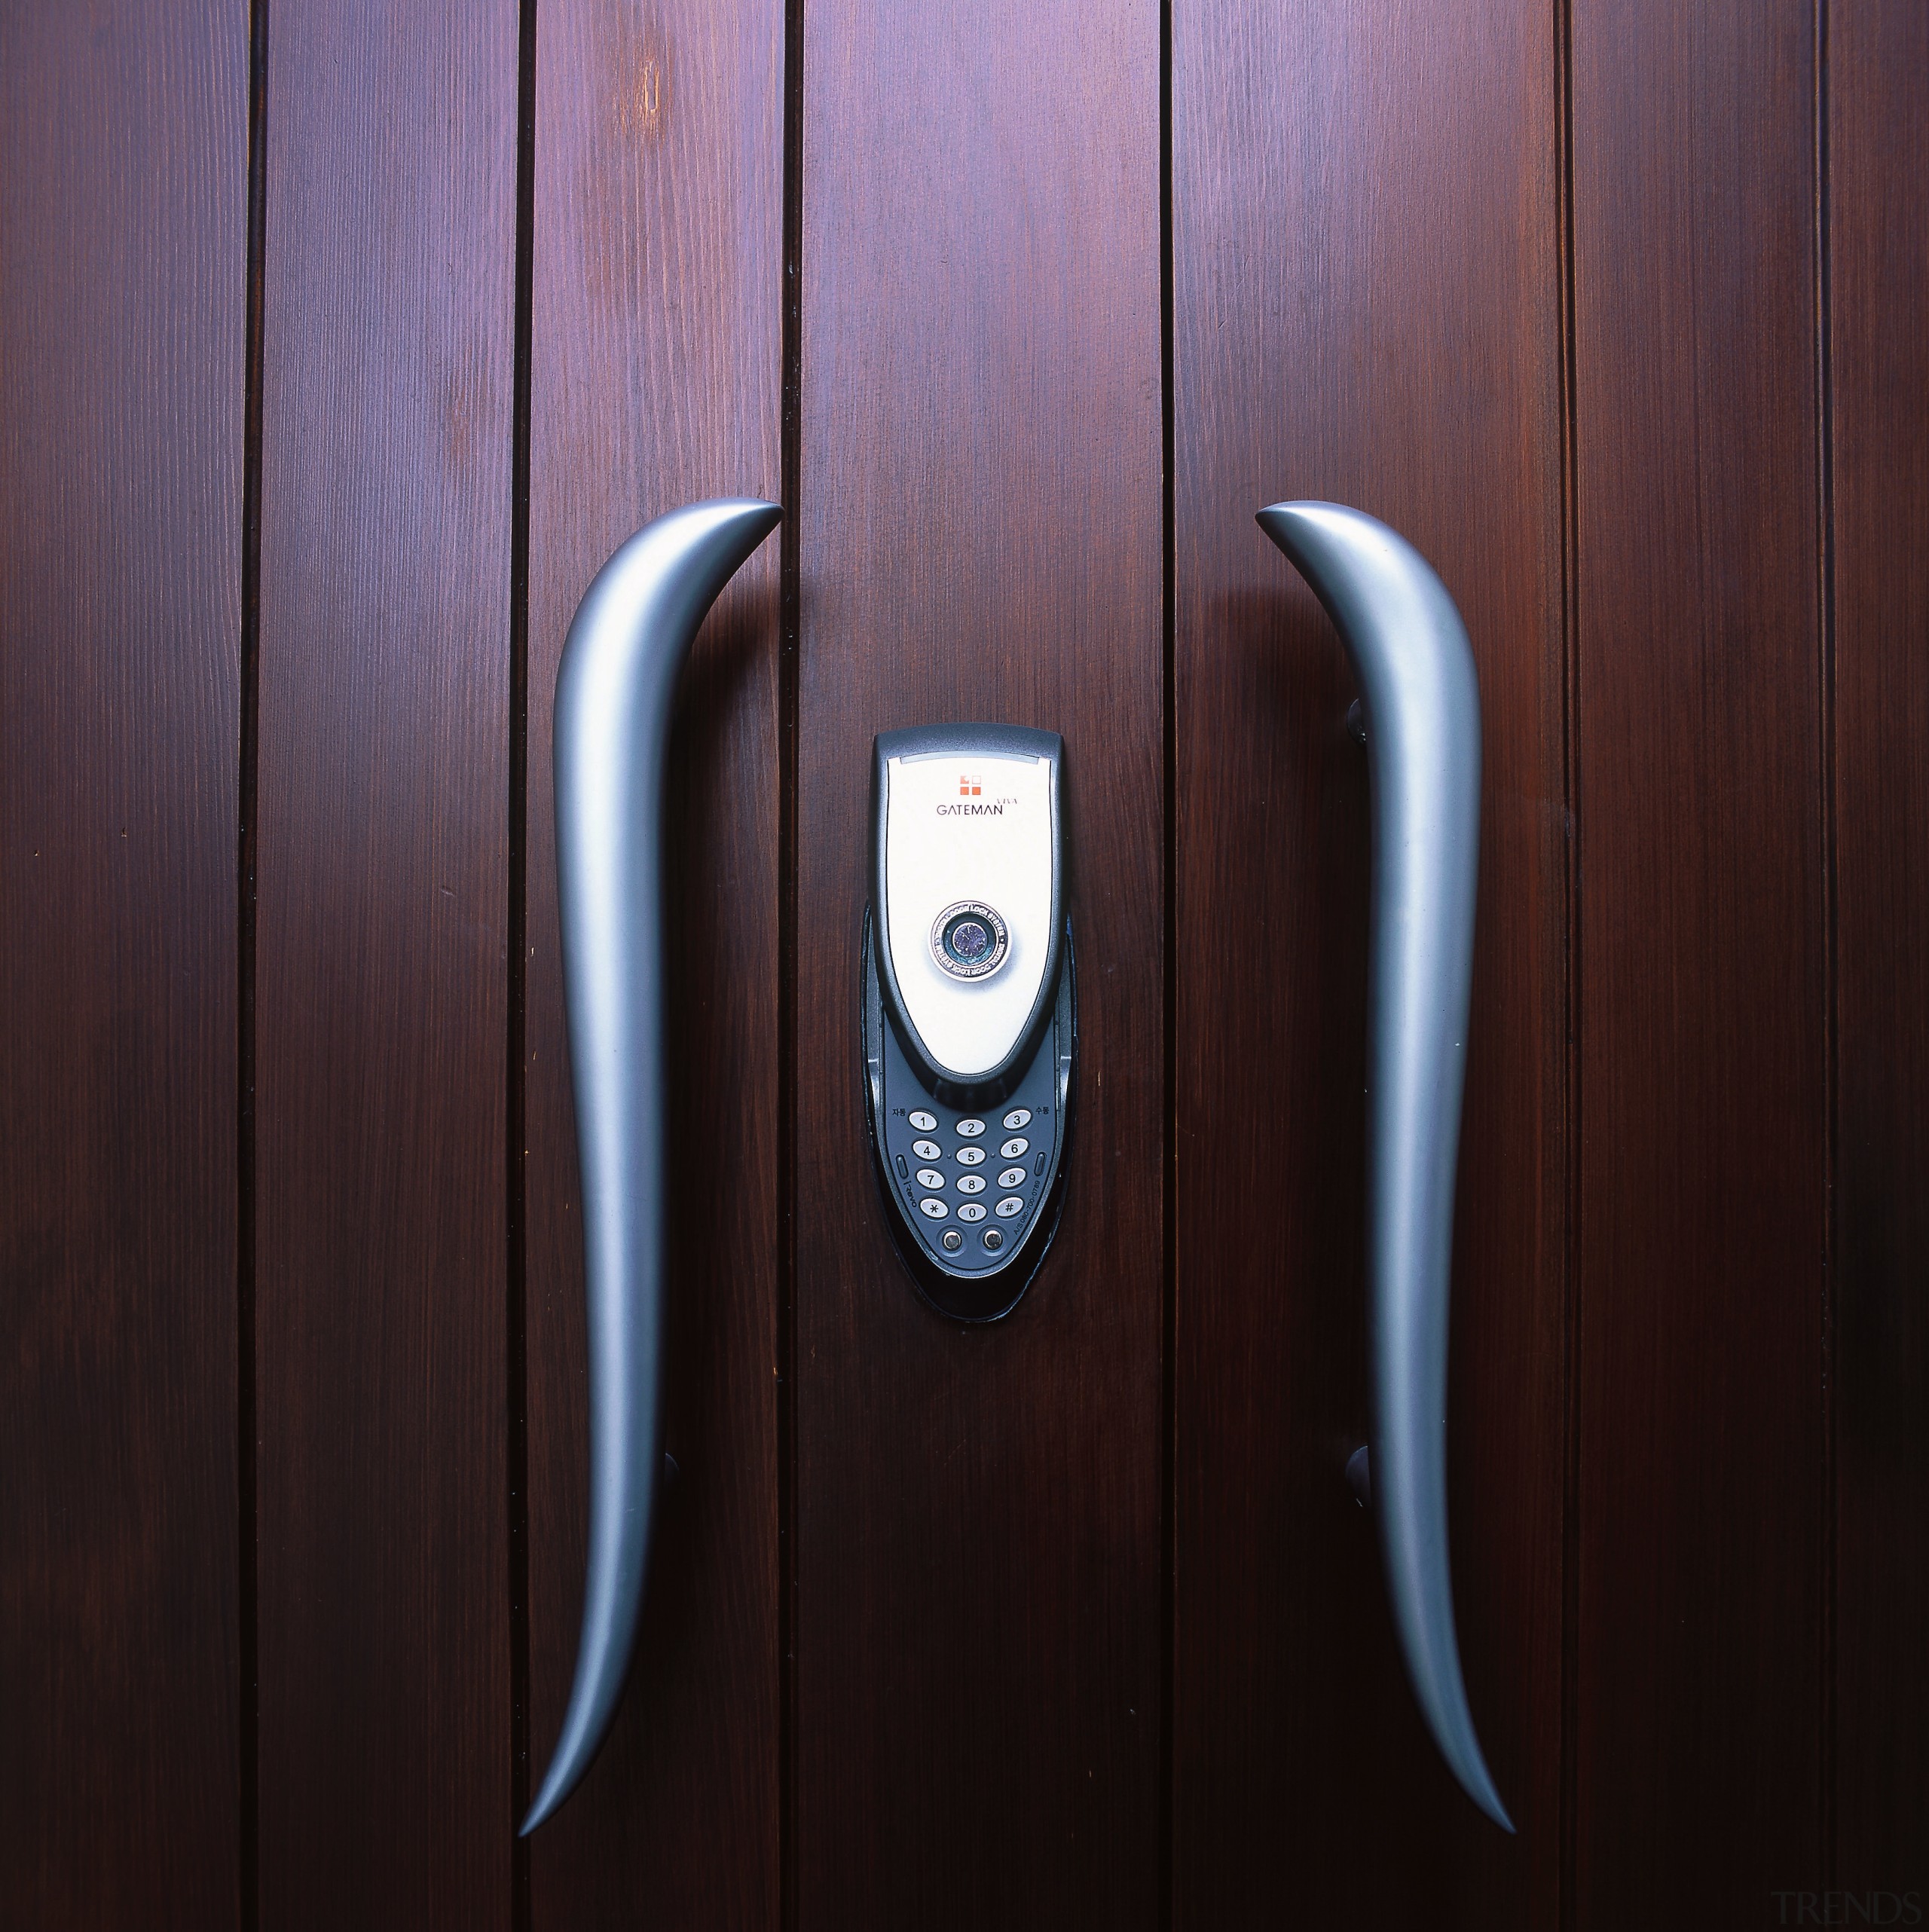 Cloe up view of a wooden front door door handle, product design, black